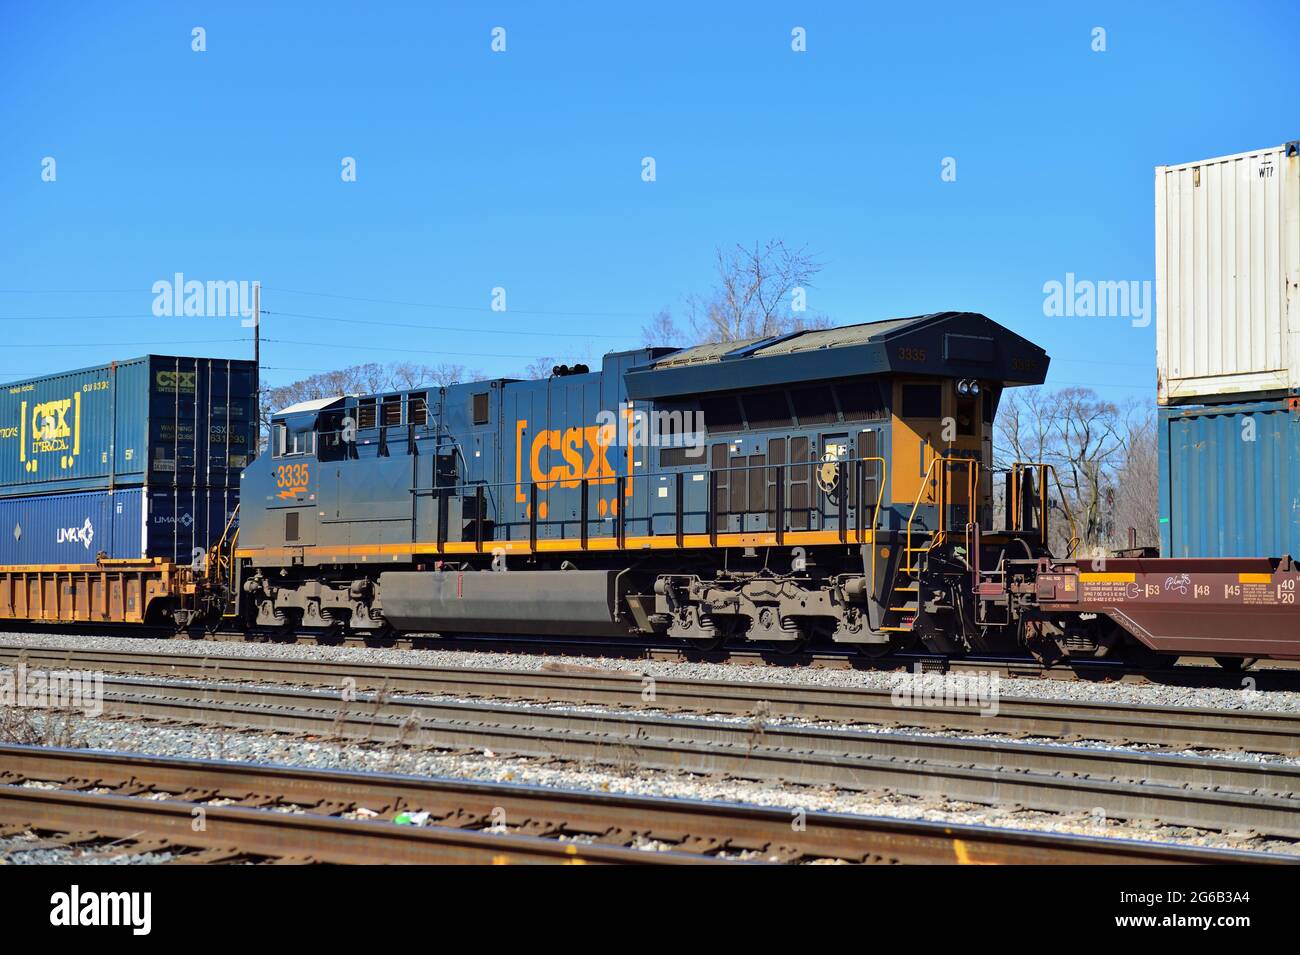 Dolton, Illinois, Stati Uniti. Una locomotiva CSX (CSX Transportation) che funge da unità di potenza distribuita (DPU) su un treno merci. Foto Stock